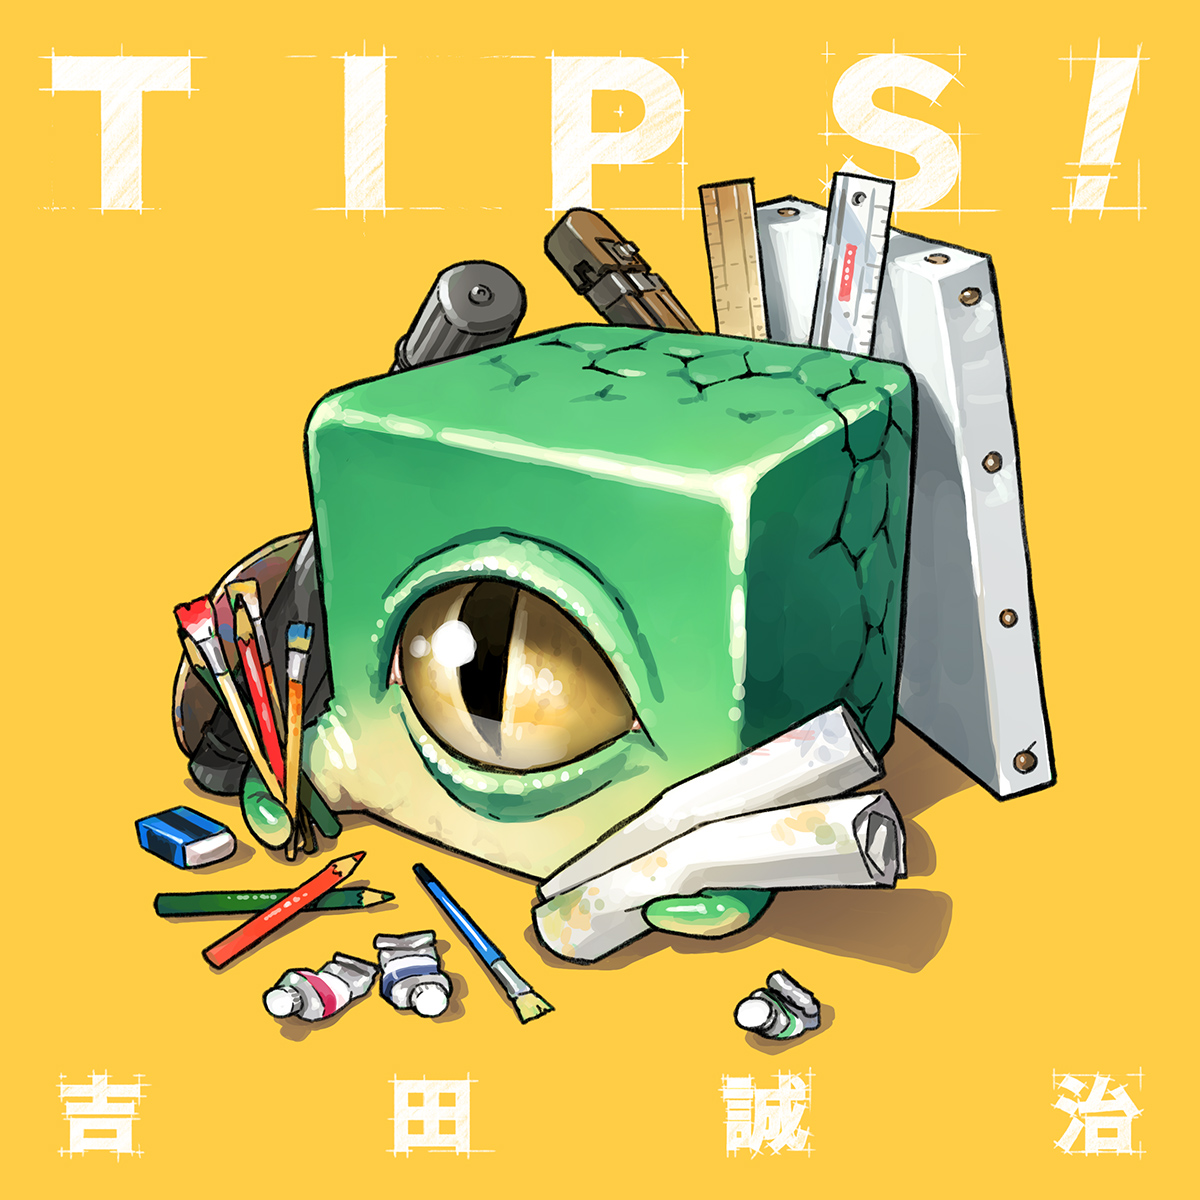 「【既刊紹介】「TIPS!」は過去にSNSで公開したものに描き下ろしを加えた、60」|吉田誠治のイラスト